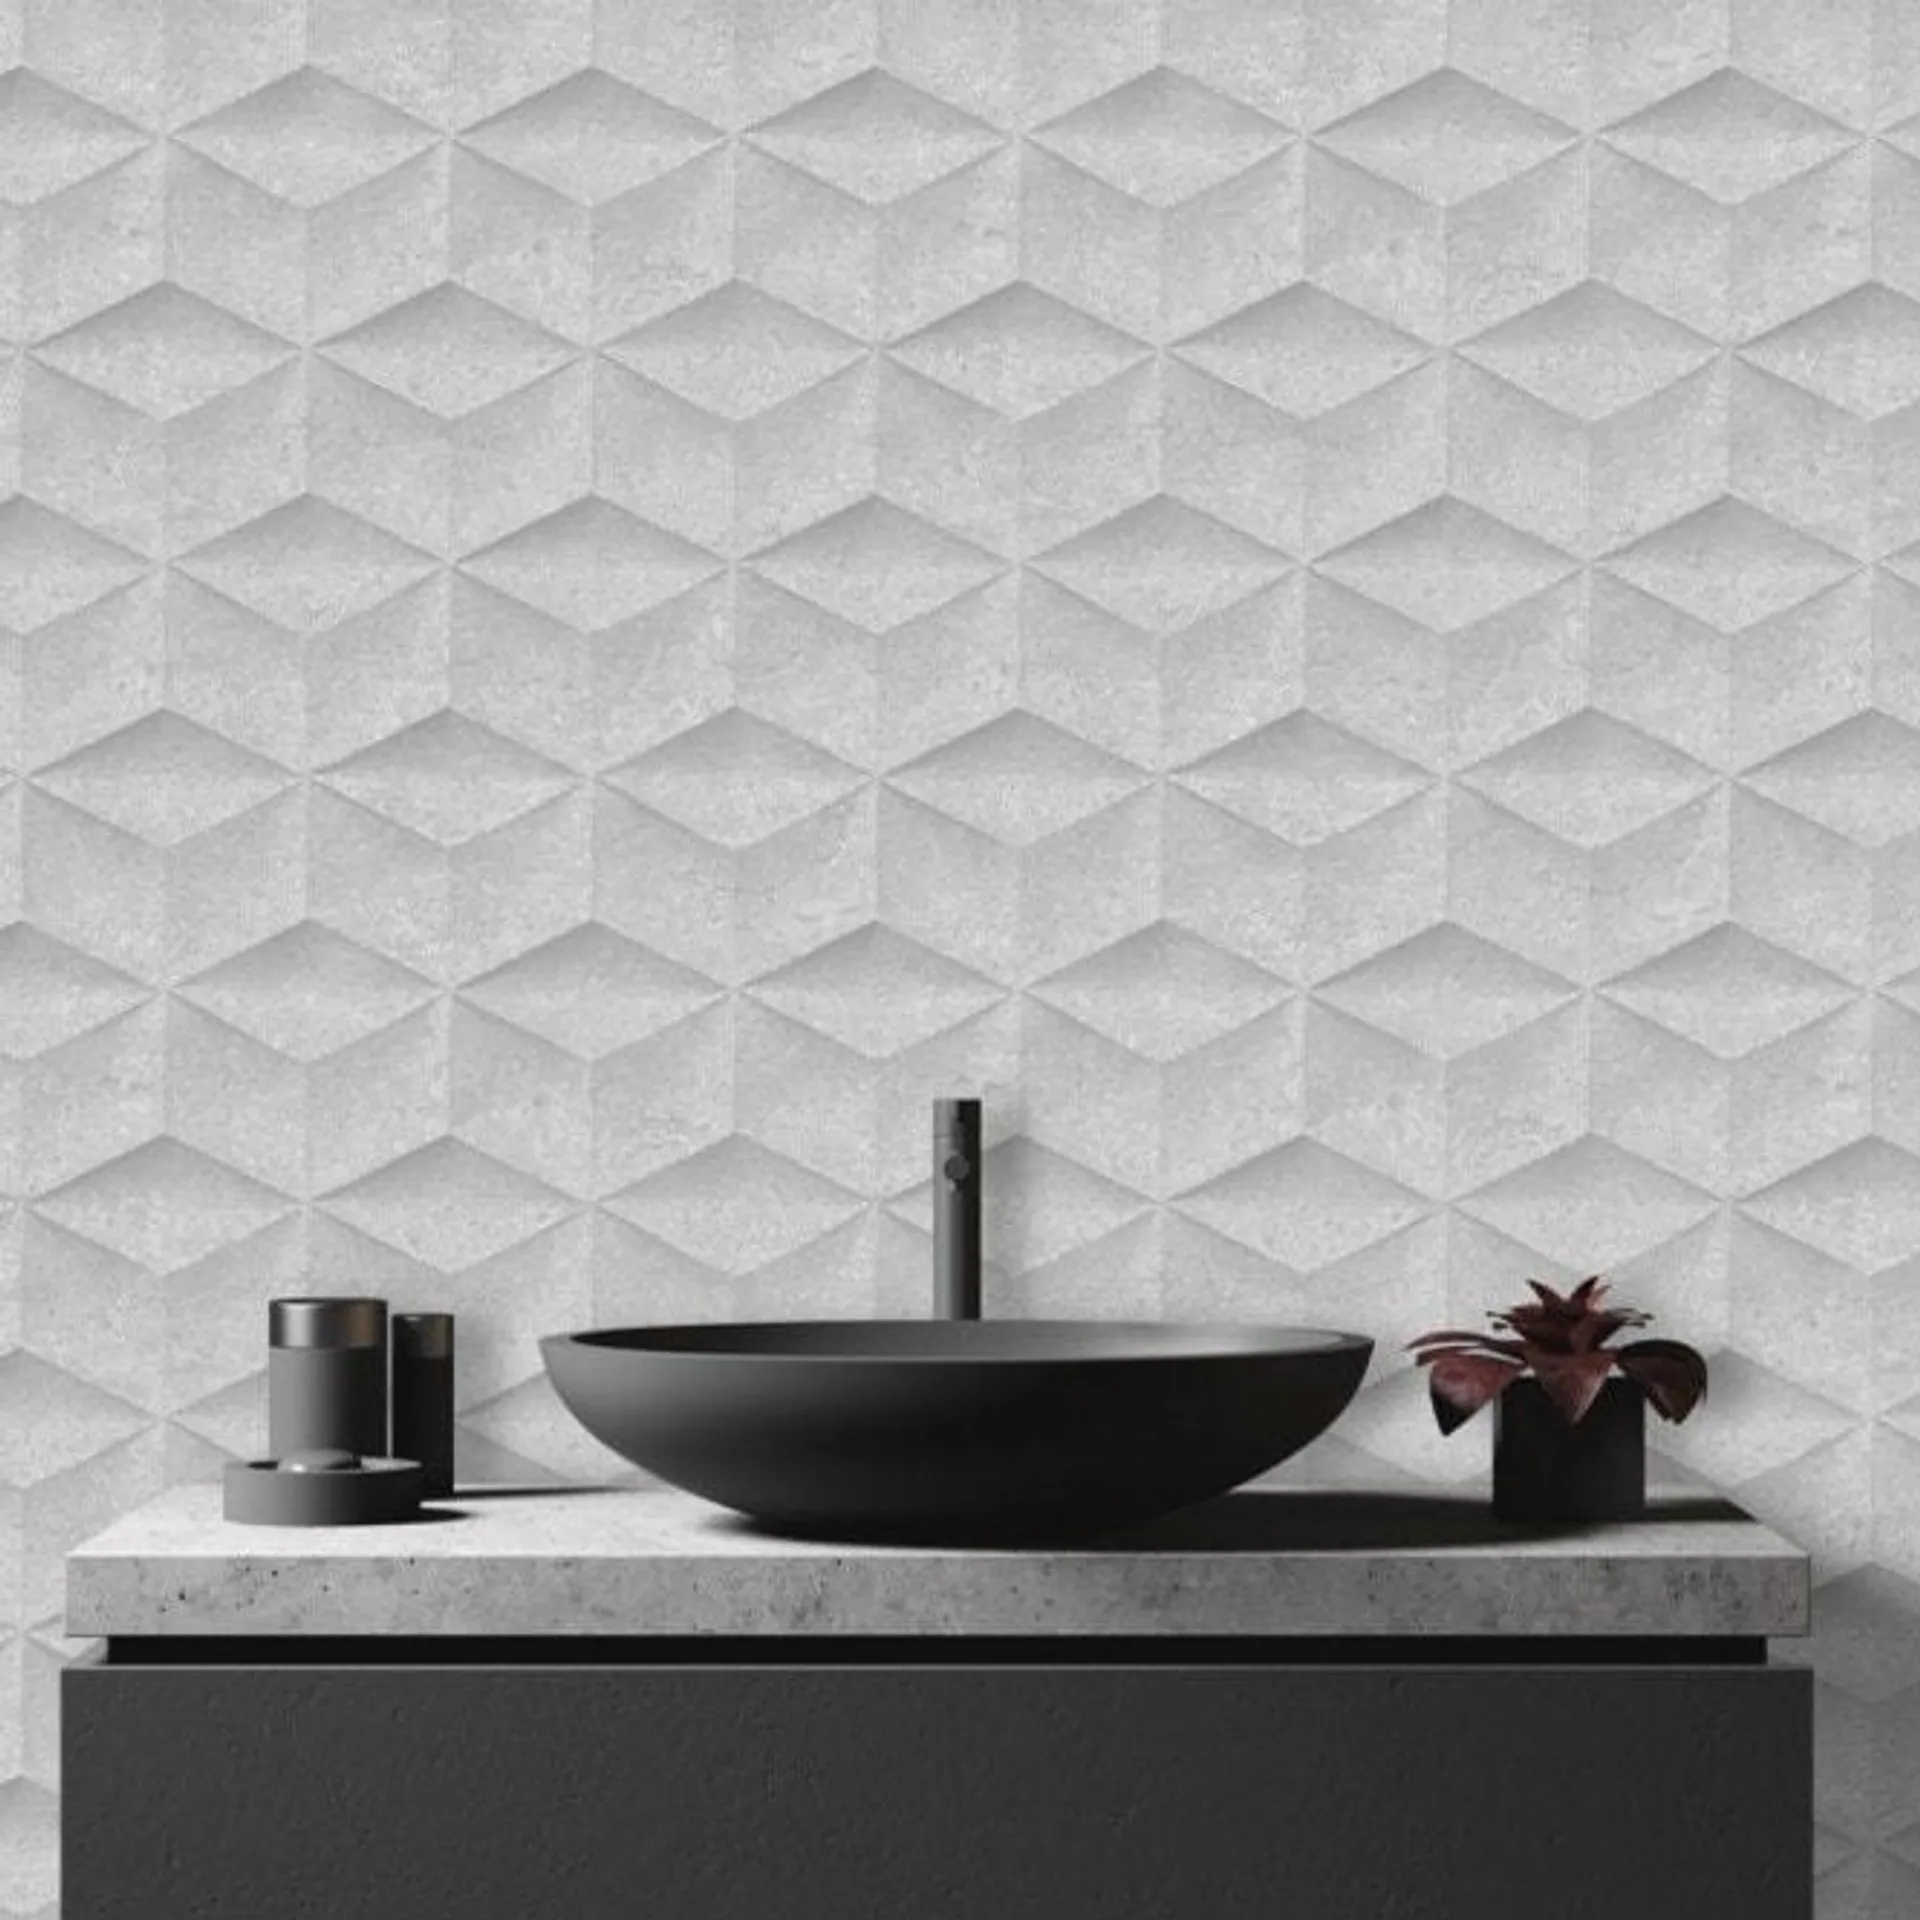 Architectural Concrete wallpaper in grey & silver